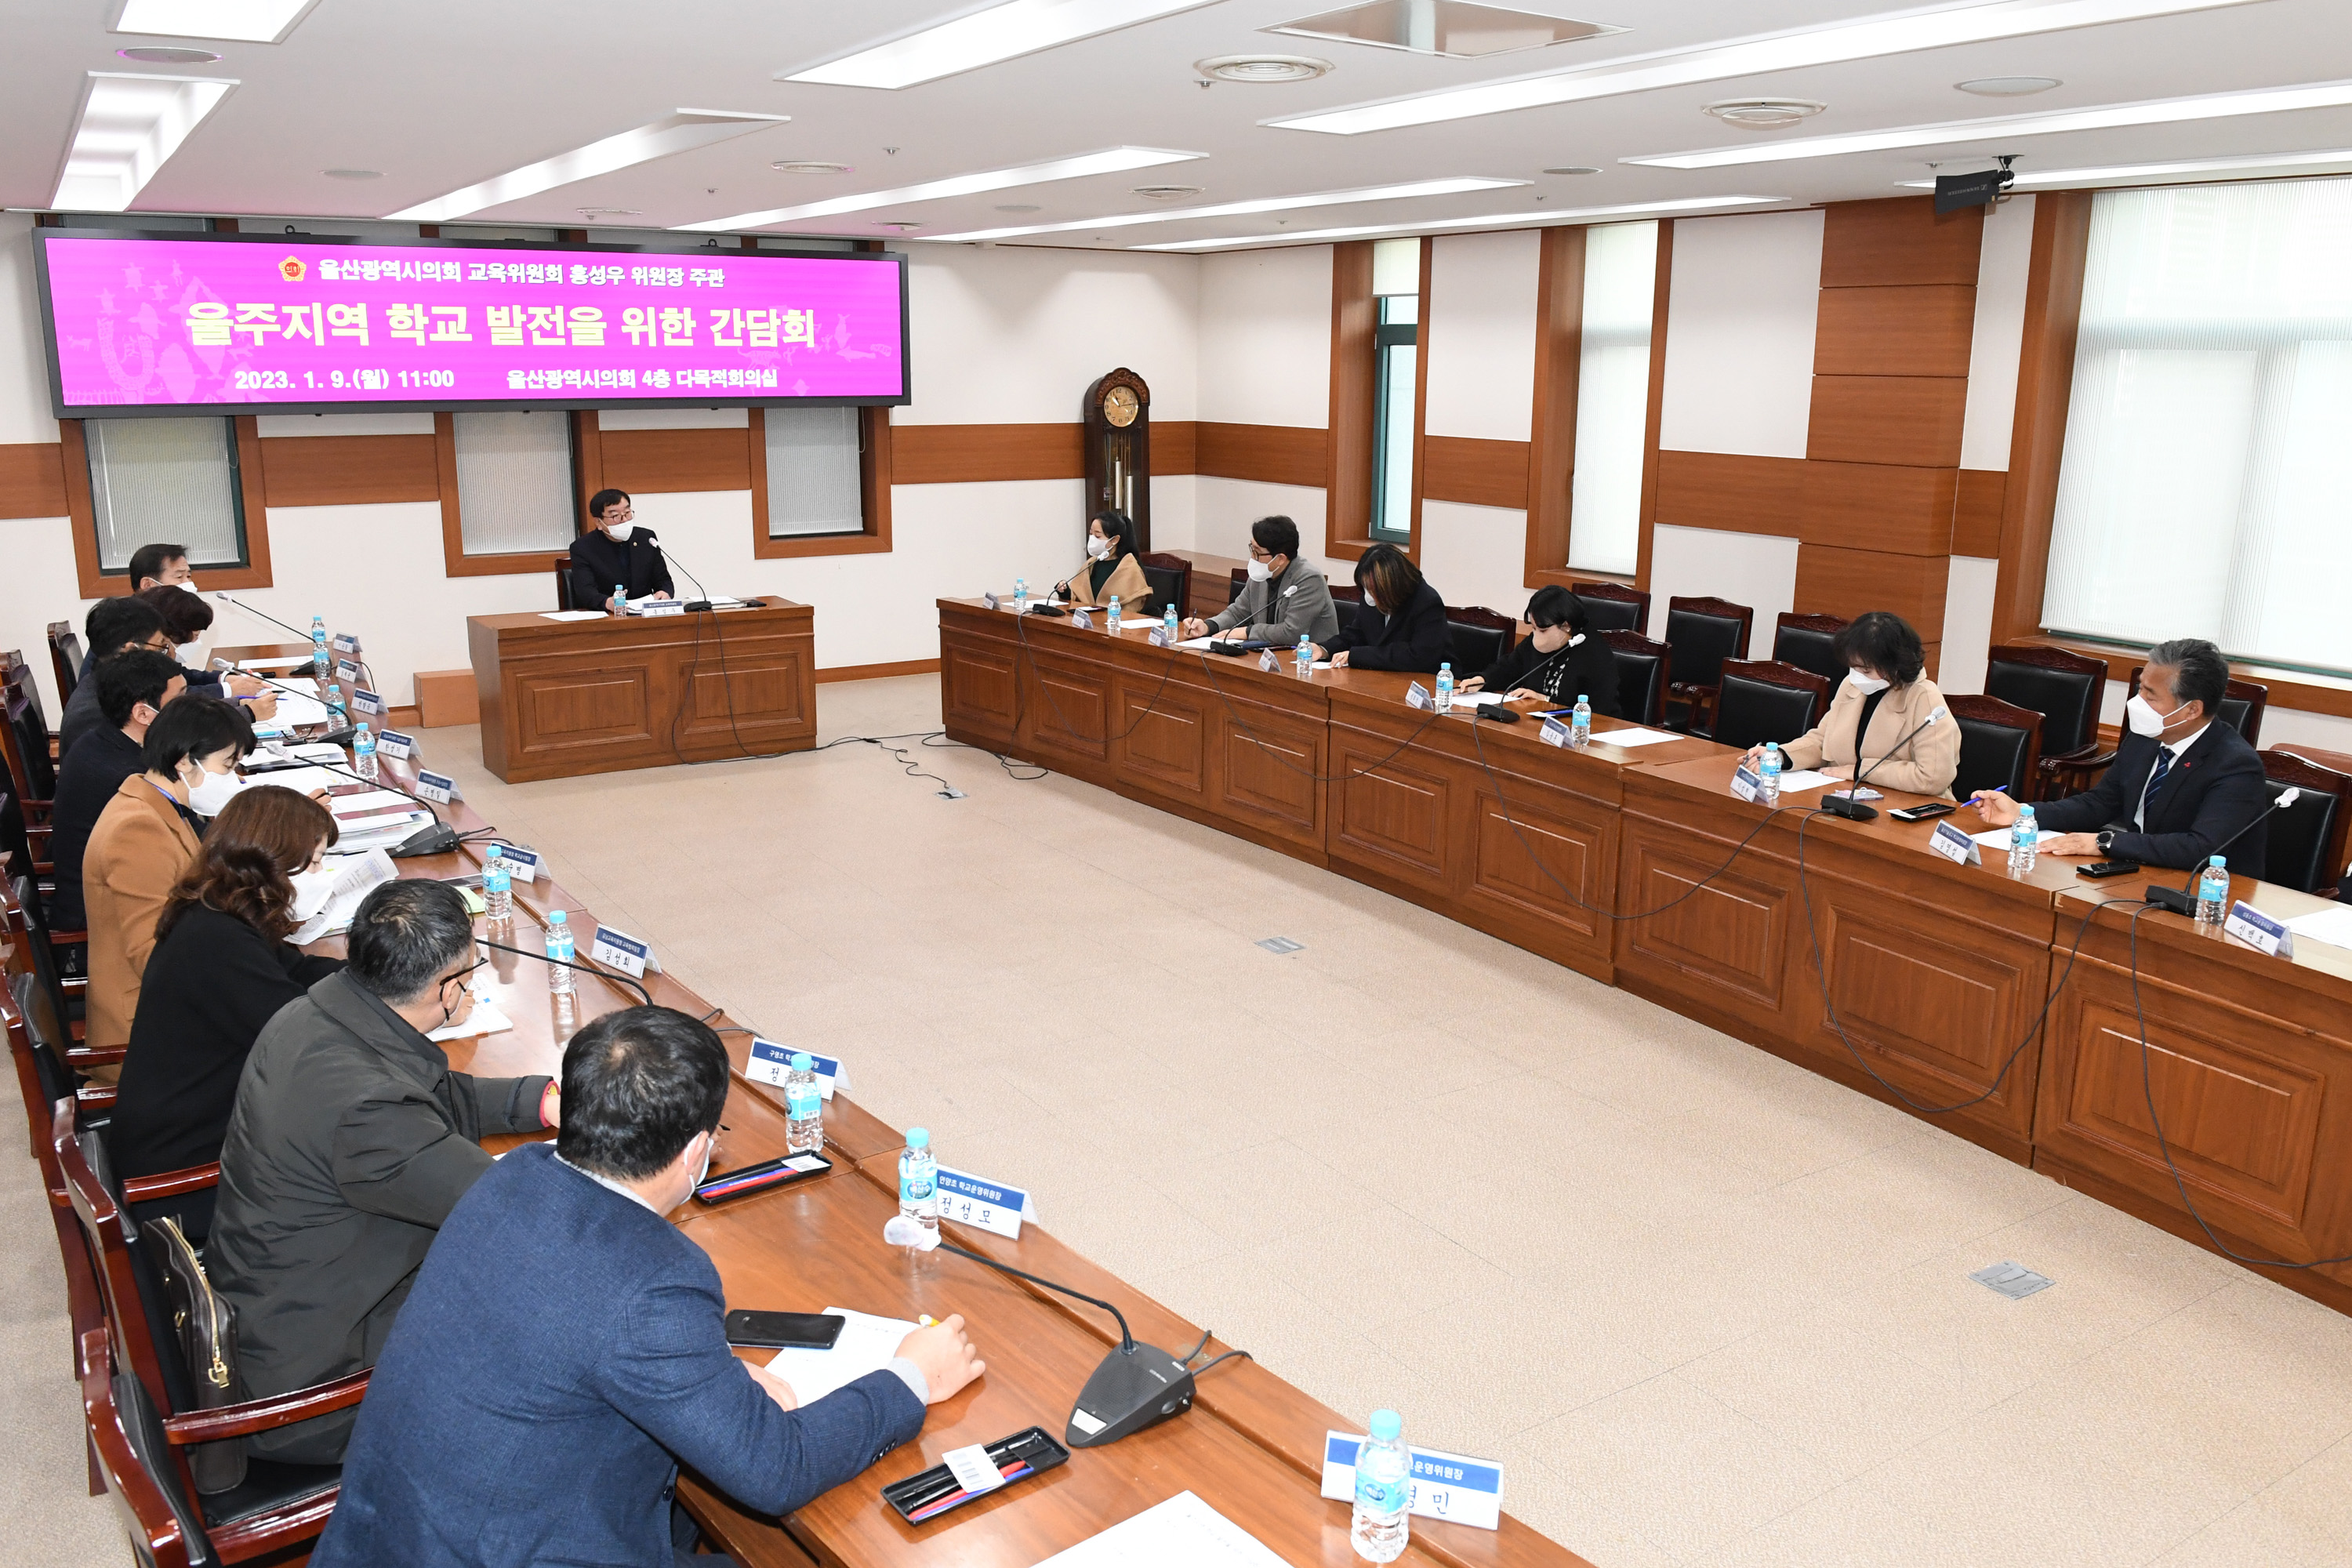 홍성우 교육위원장, 울주지역 학교 발전을 위한 간담회4